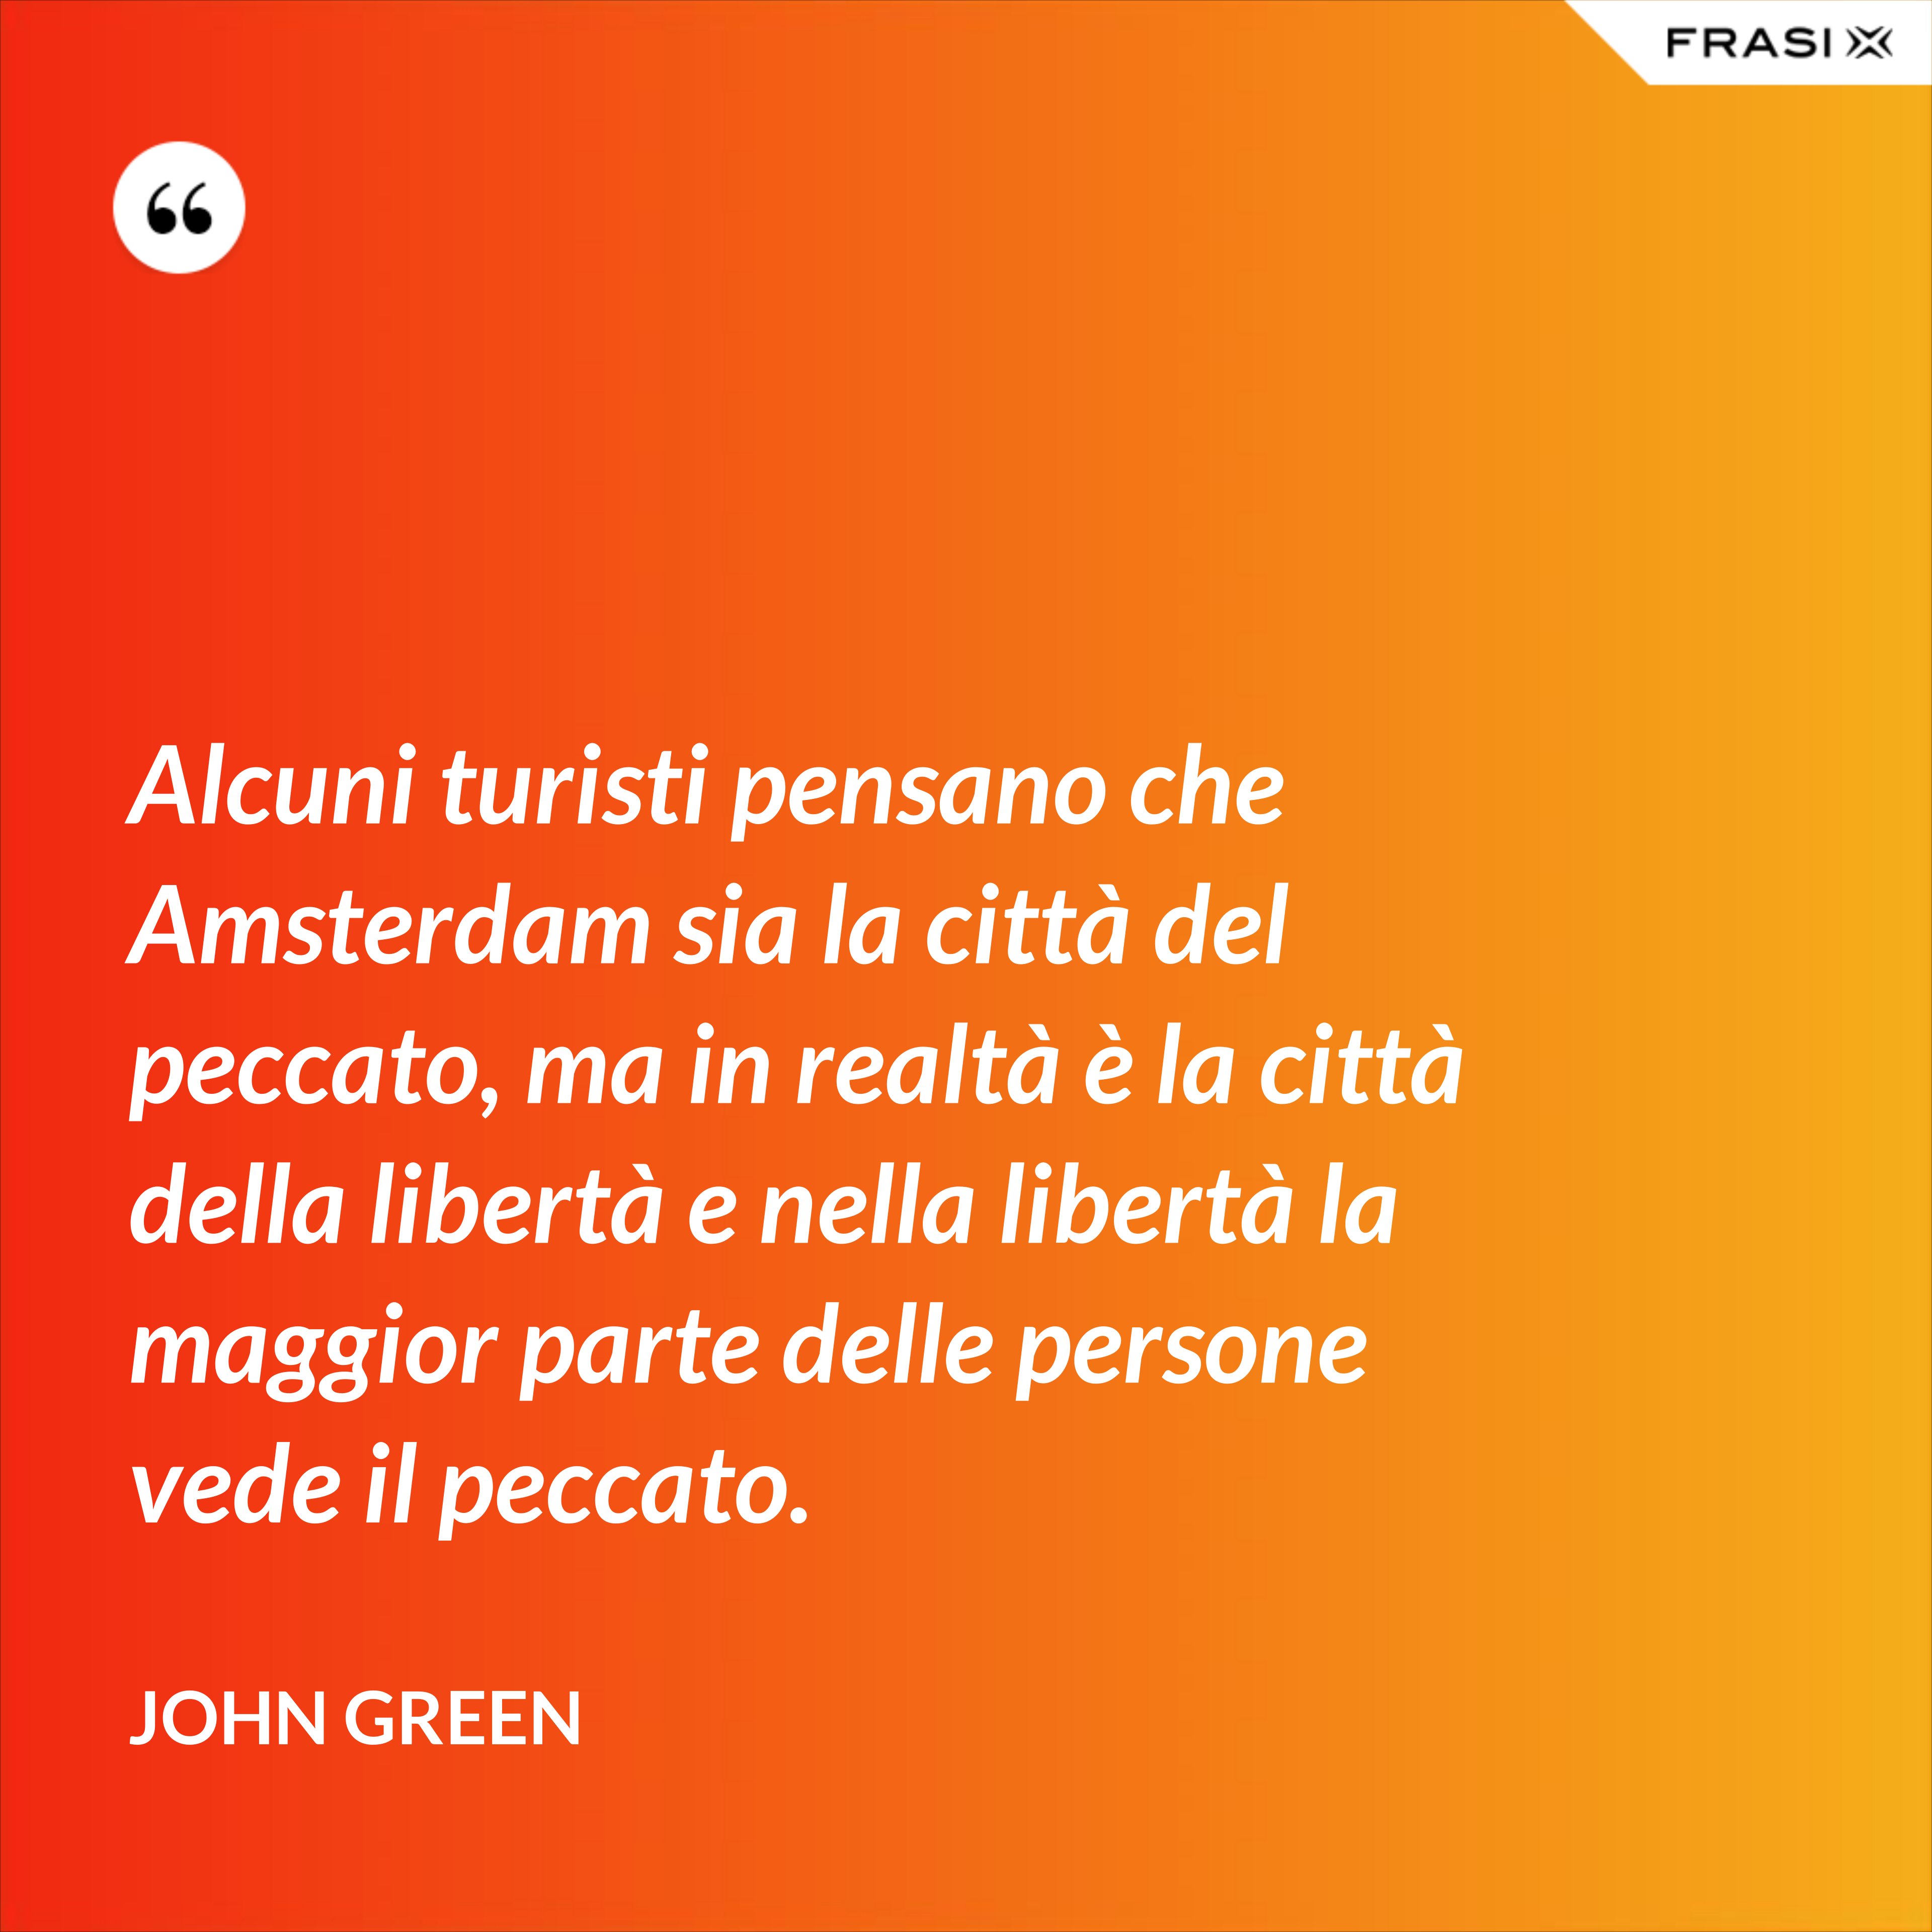 Alcuni turisti pensano che Amsterdam sia la città del peccato, ma in realtà è la città della libertà e nella libertà la maggior parte delle persone vede il peccato. - John Green